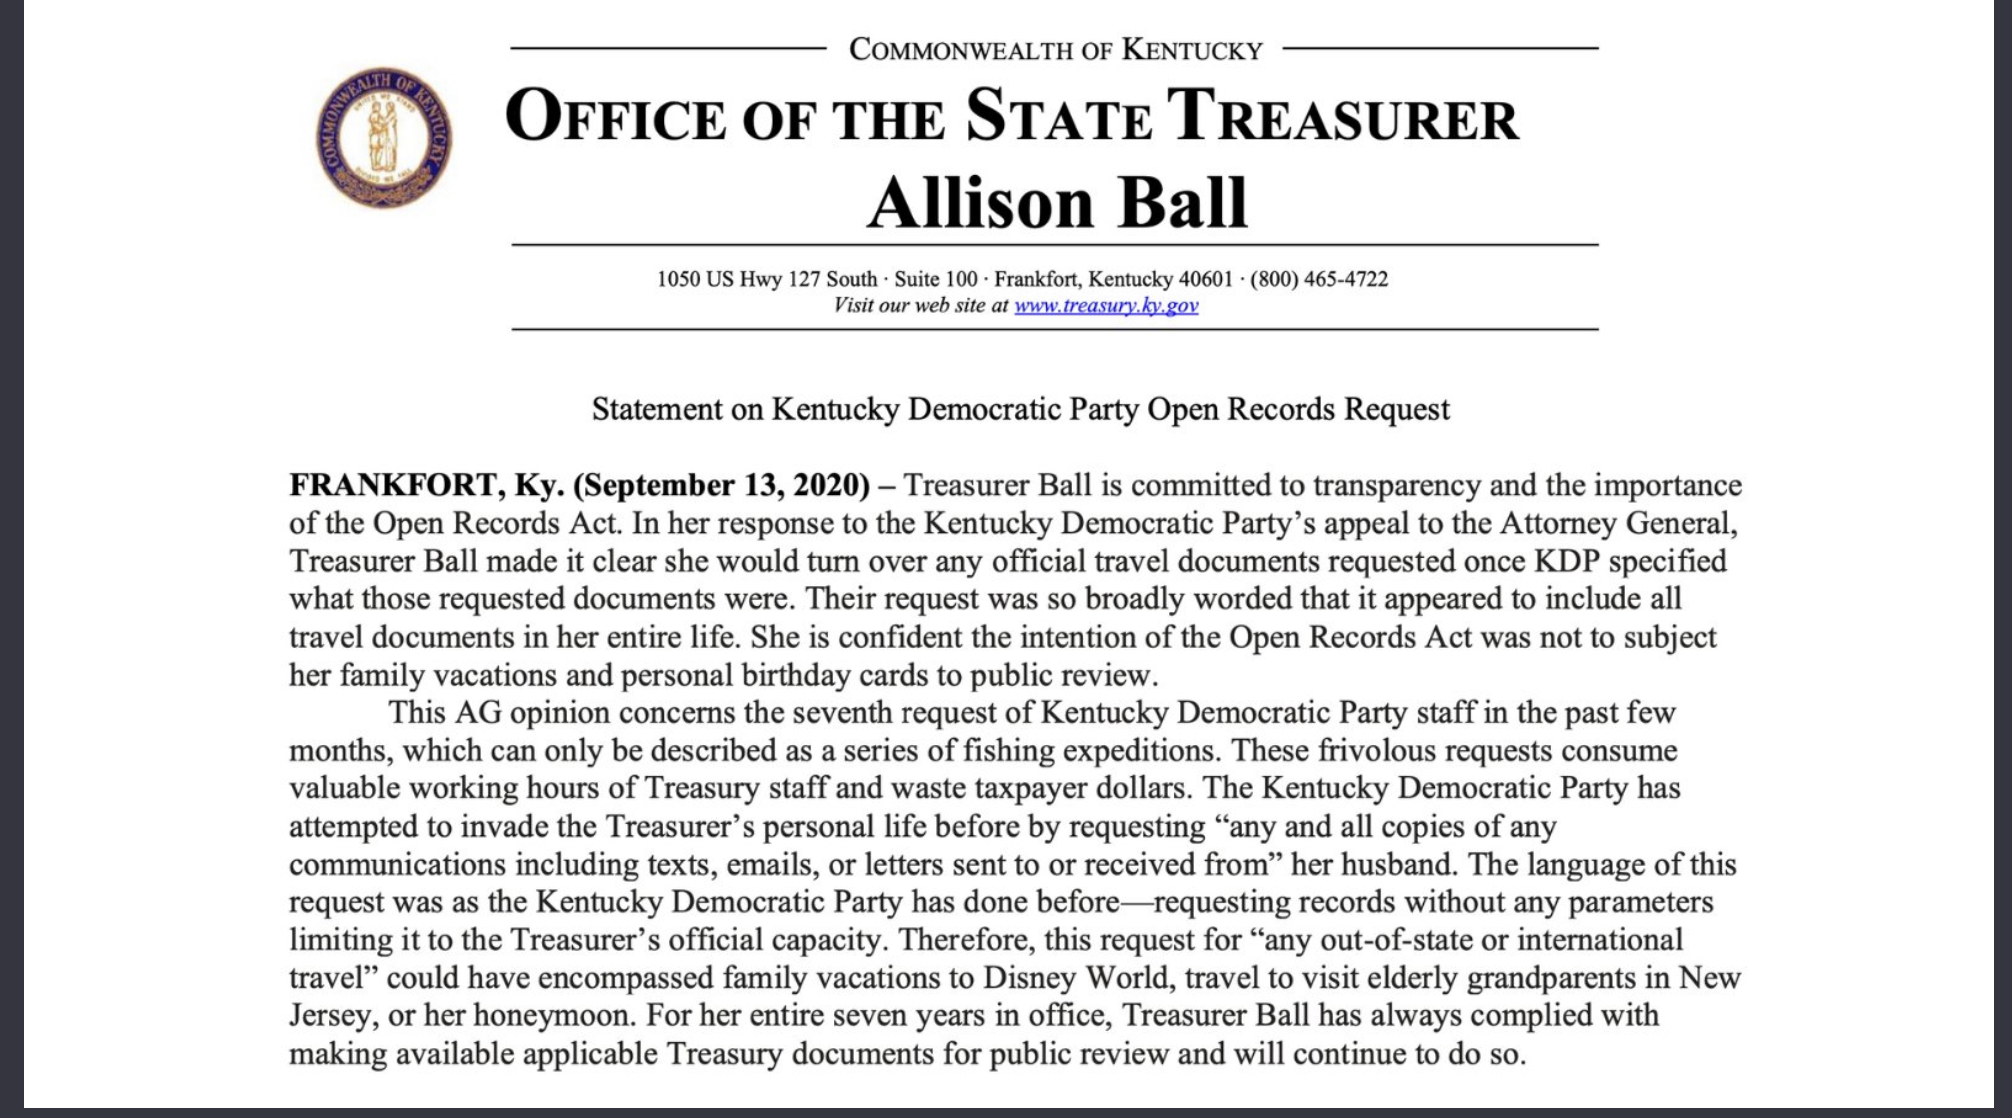 Statement issued by Treasurer Allison Ball